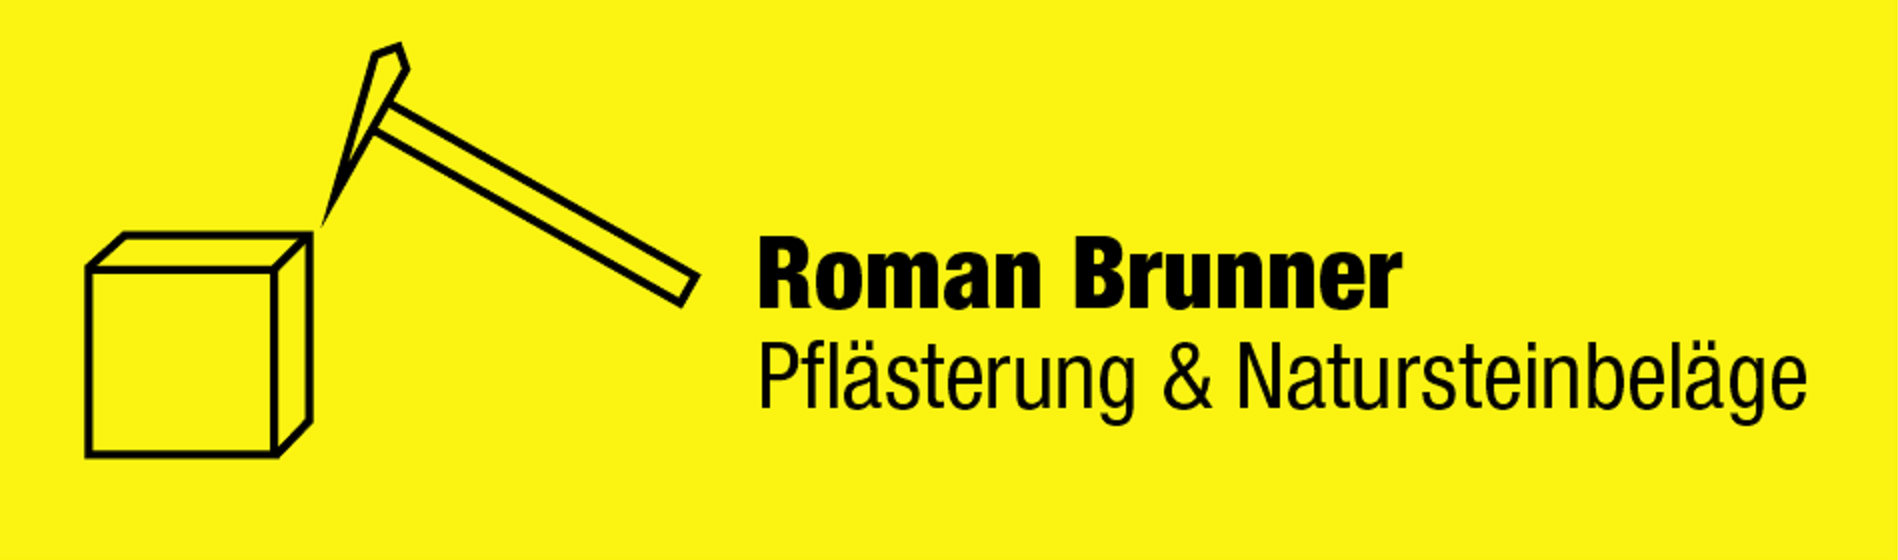 Roman Brunner Pflästerungen & Natursteinbeläge